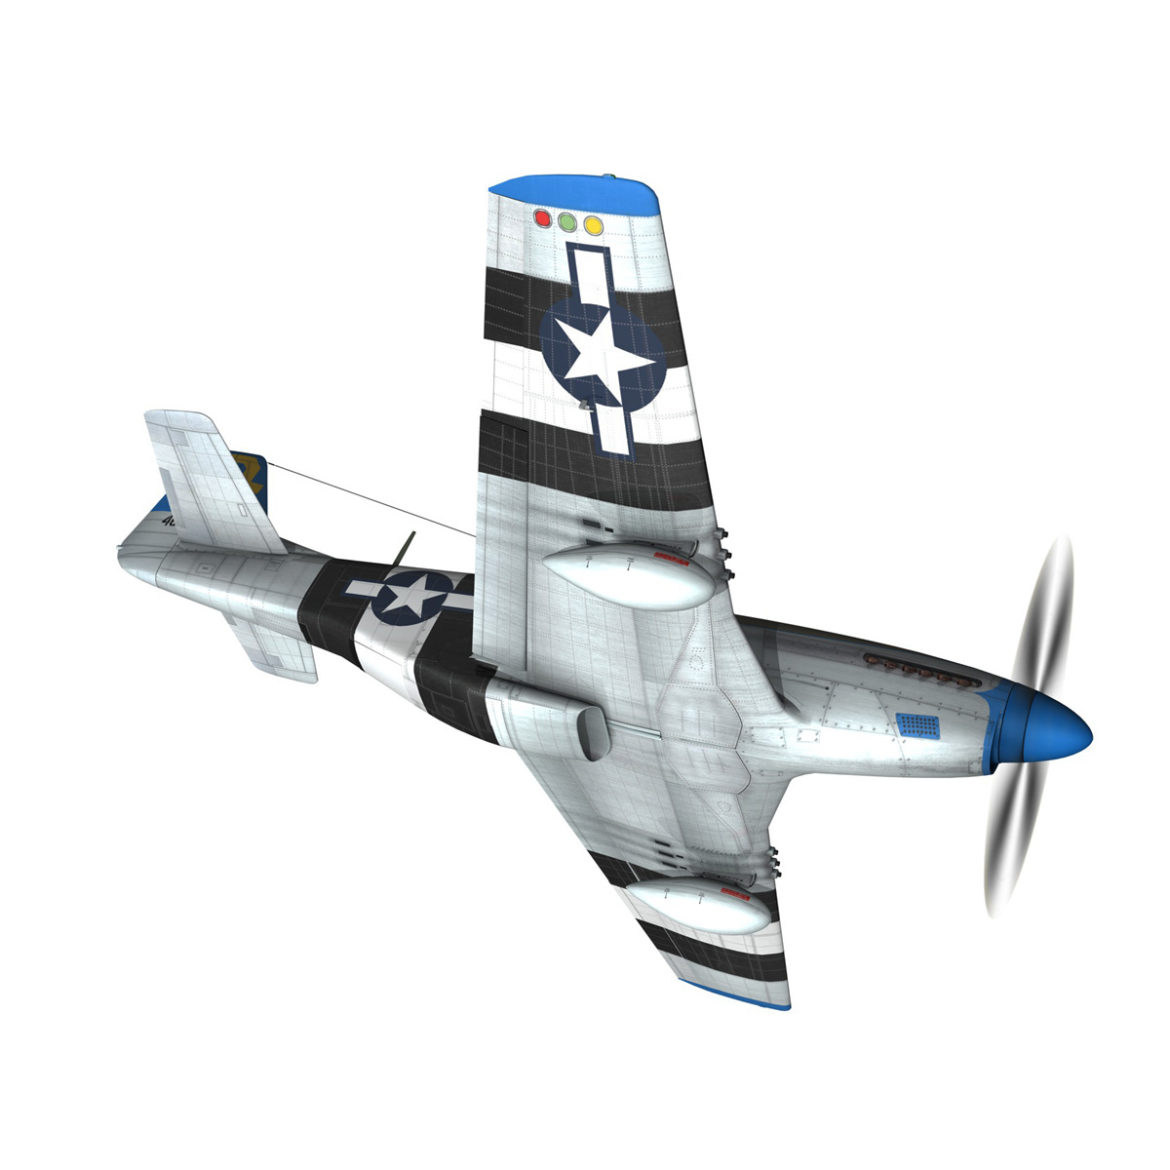 north american p-51d mustang – jumpin jacques 3d model fbx c4d lwo obj 294329